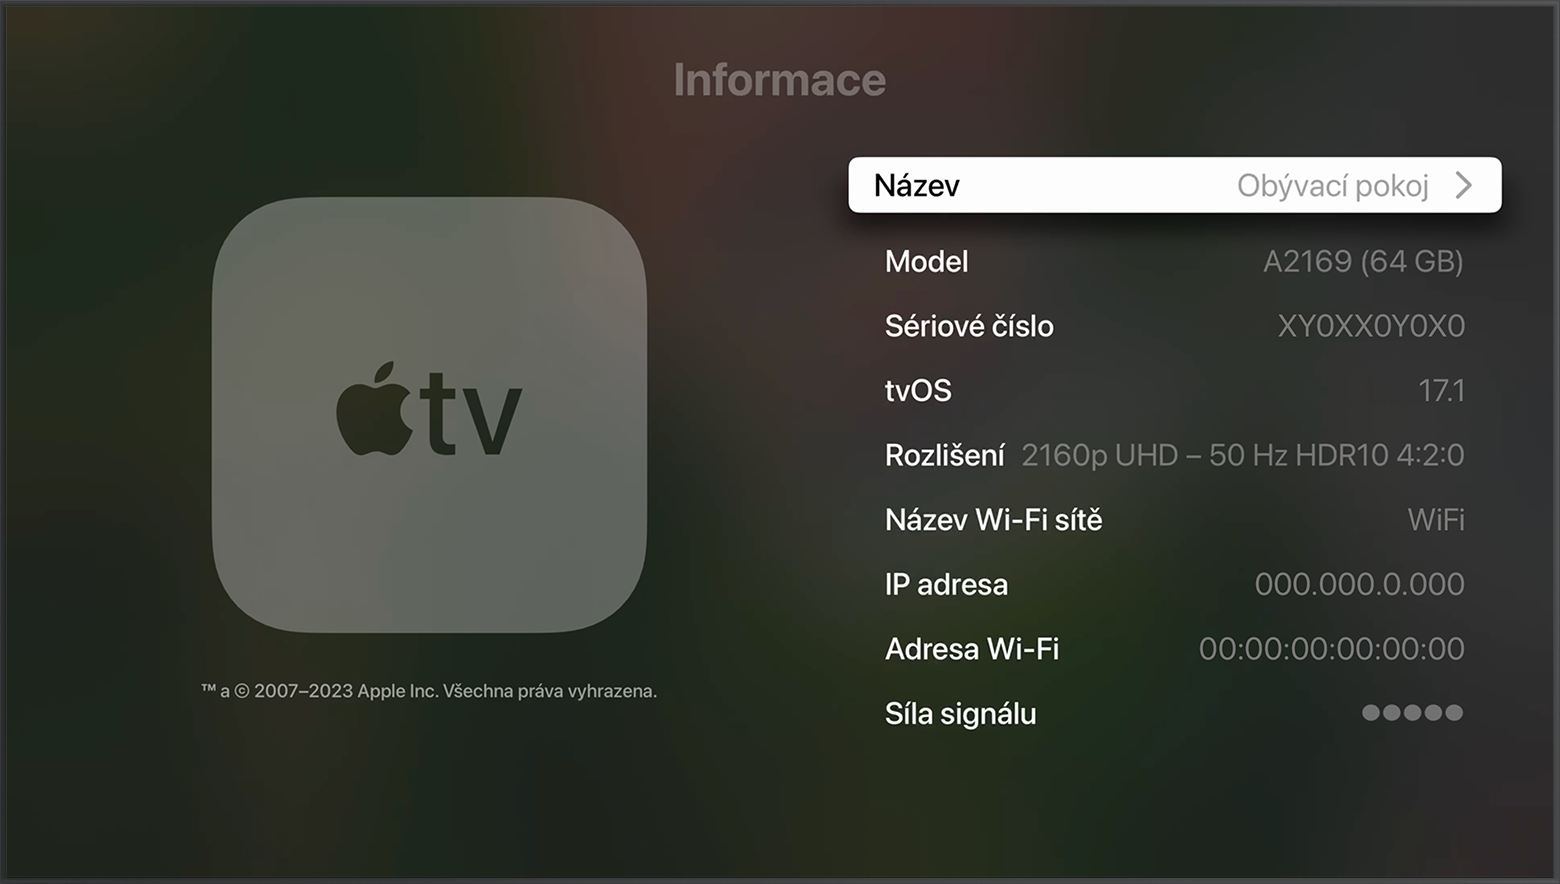 Sériové číslo se zobrazí v horní části obrazovky Informace na Apple TV